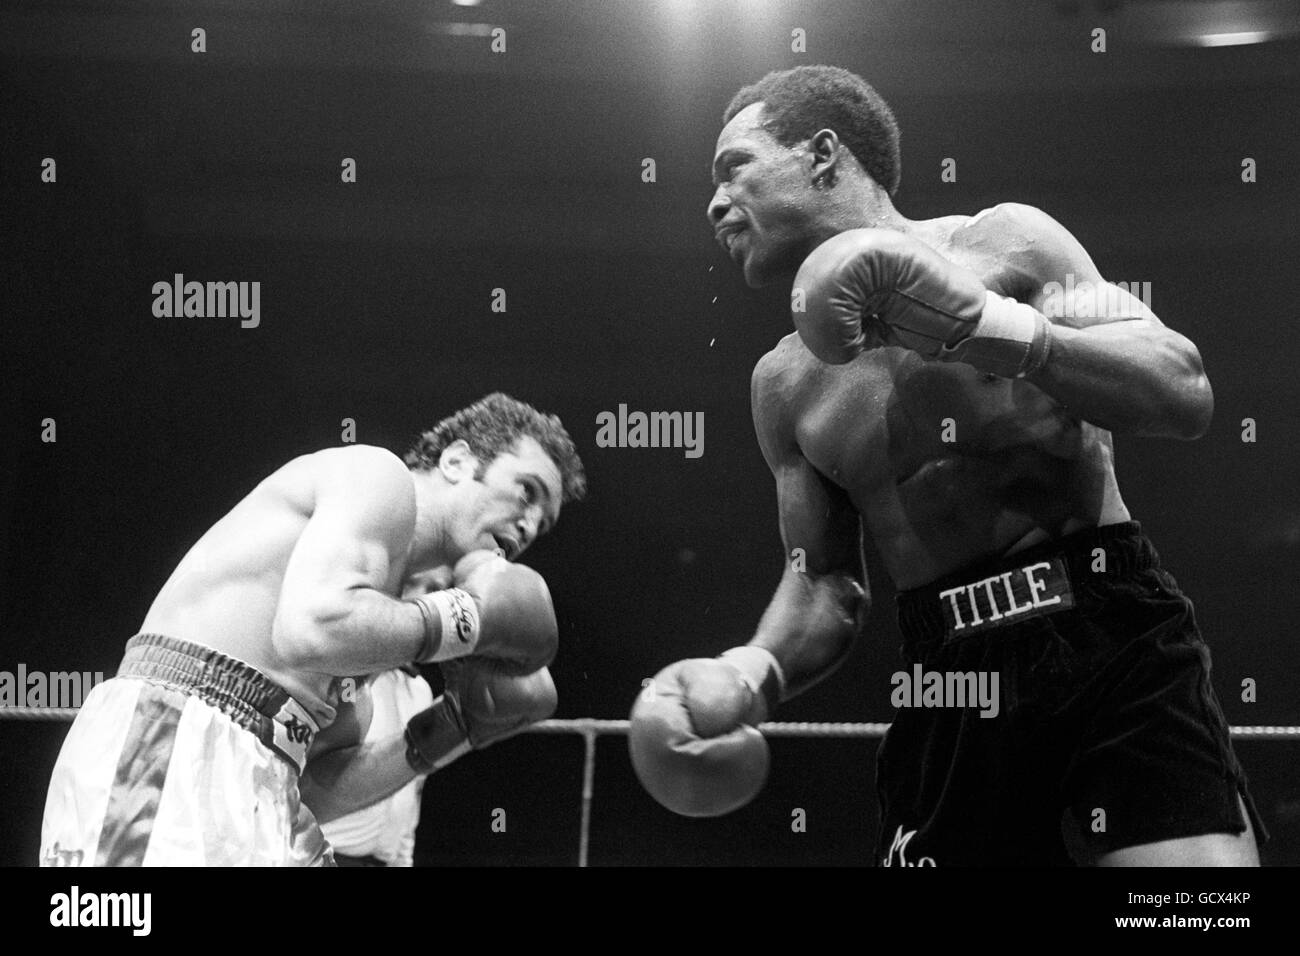 Boxen - WBC Light Middleweight Titel - Maurice Hope / Rocky Mattioli - Conference Center, Wembley. Der britische Maurice Hope, rechts, im Kampf gegen Rocky Mattioli aus Australien. Stockfoto